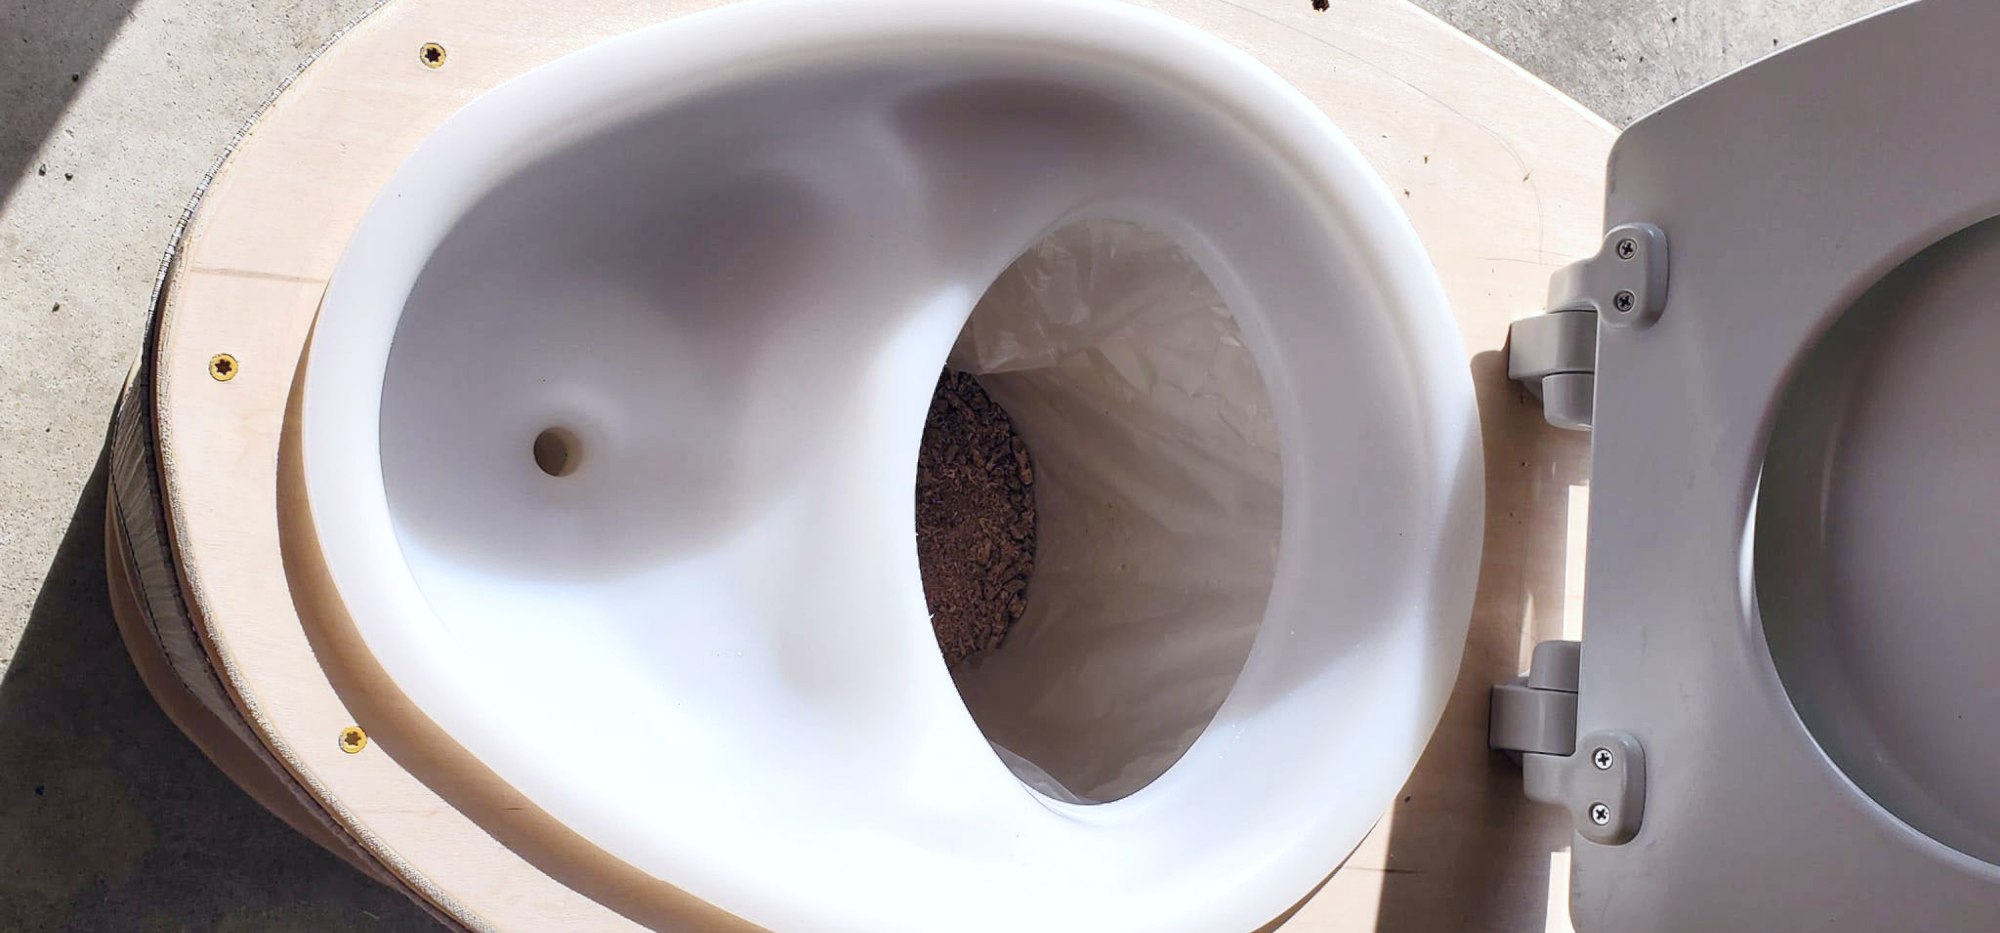 DIY Throne Composting Toilet in a Skoolie – Mimi’s skoolie build